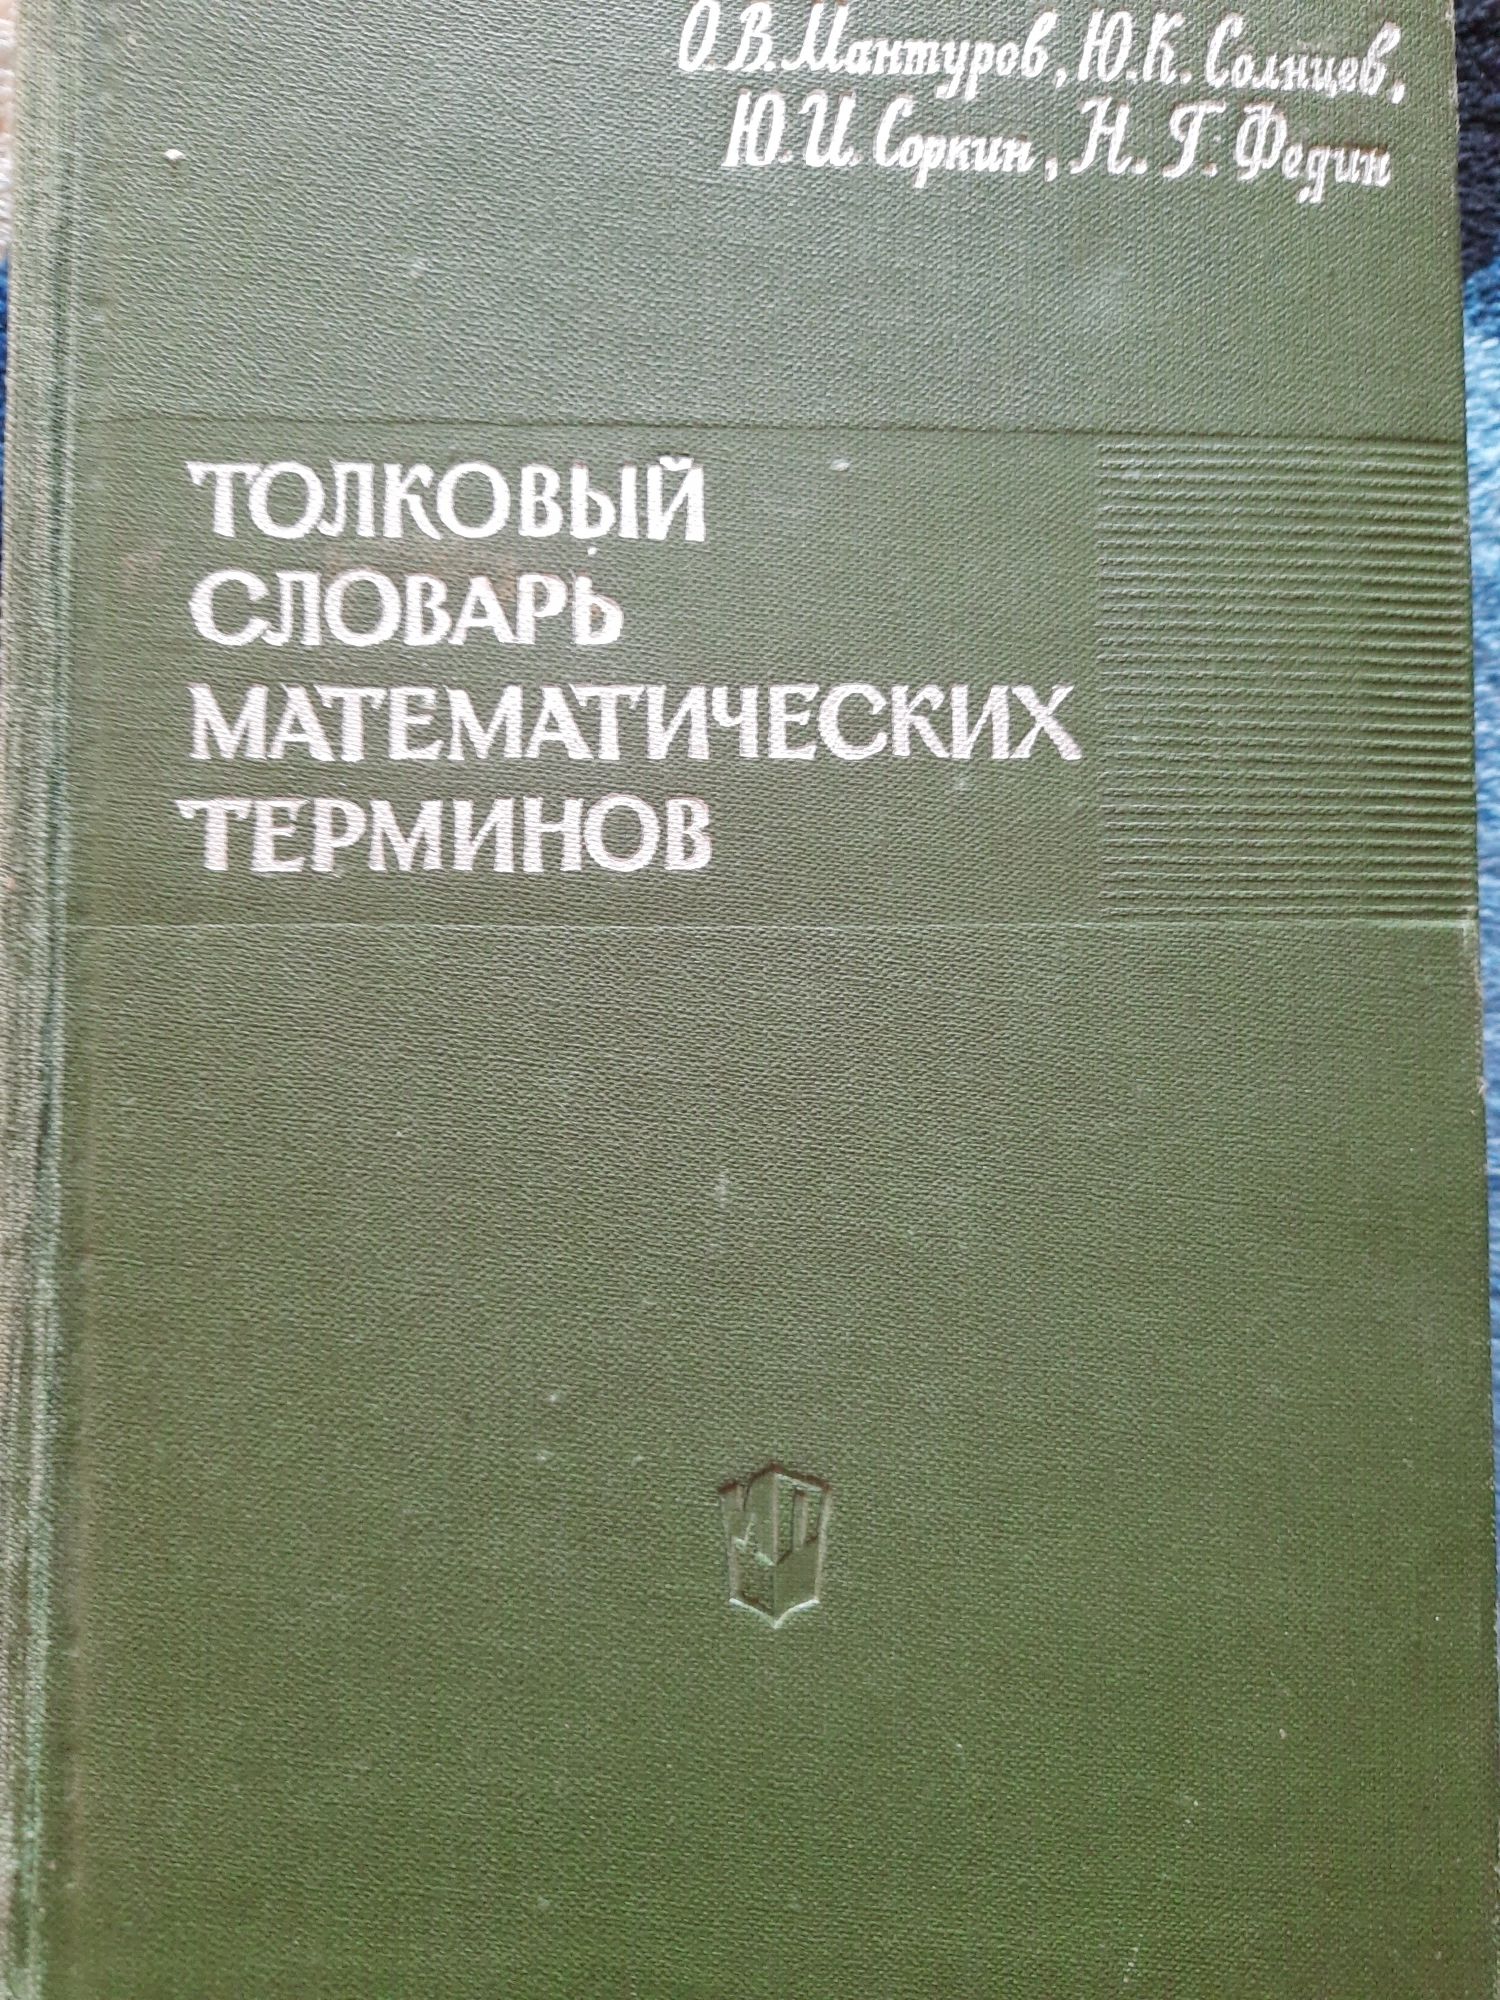 Продам учебники , справочники по высшей математике.